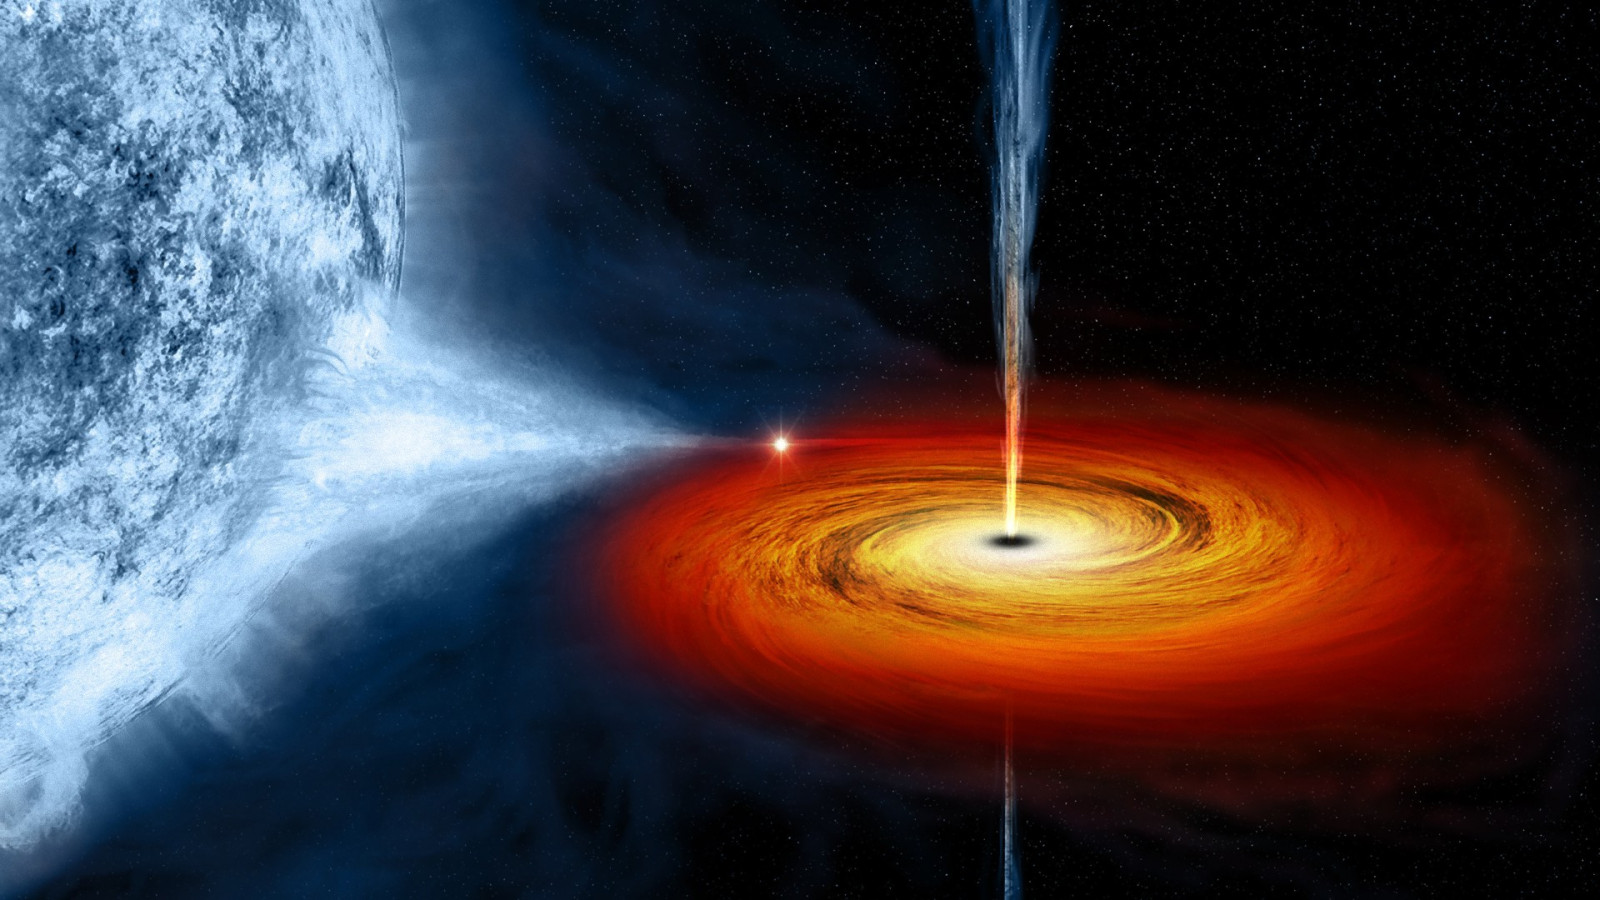 evrenin-akil-almaz-gizemlerinden-kara-delikler